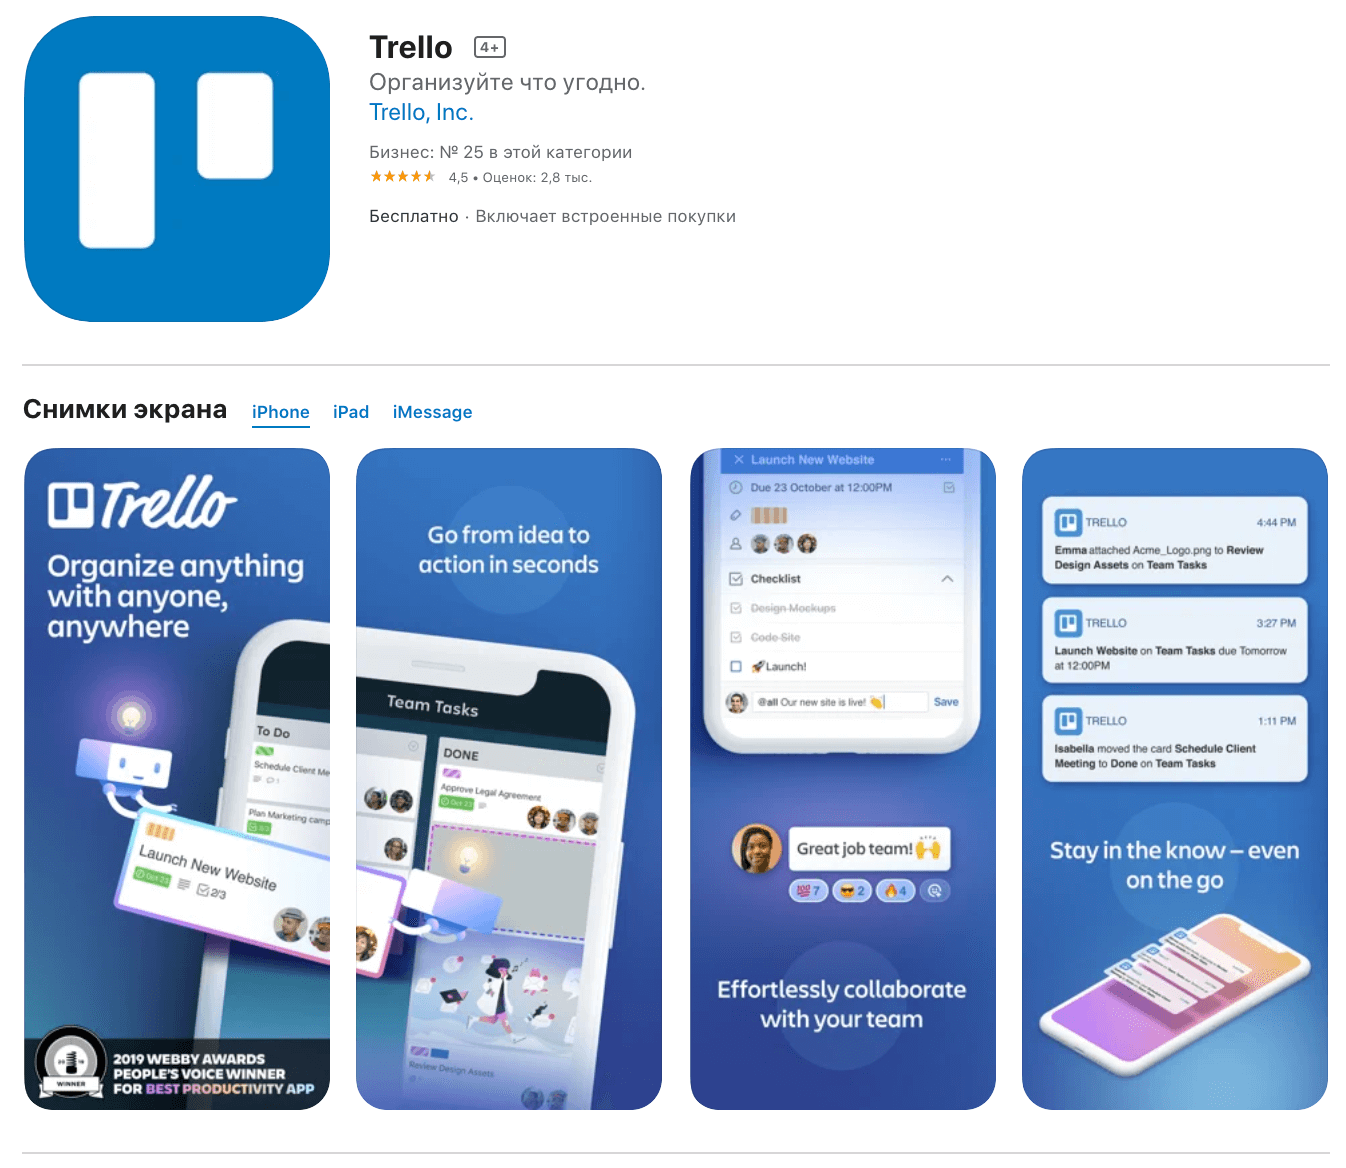 Trello-mobile app